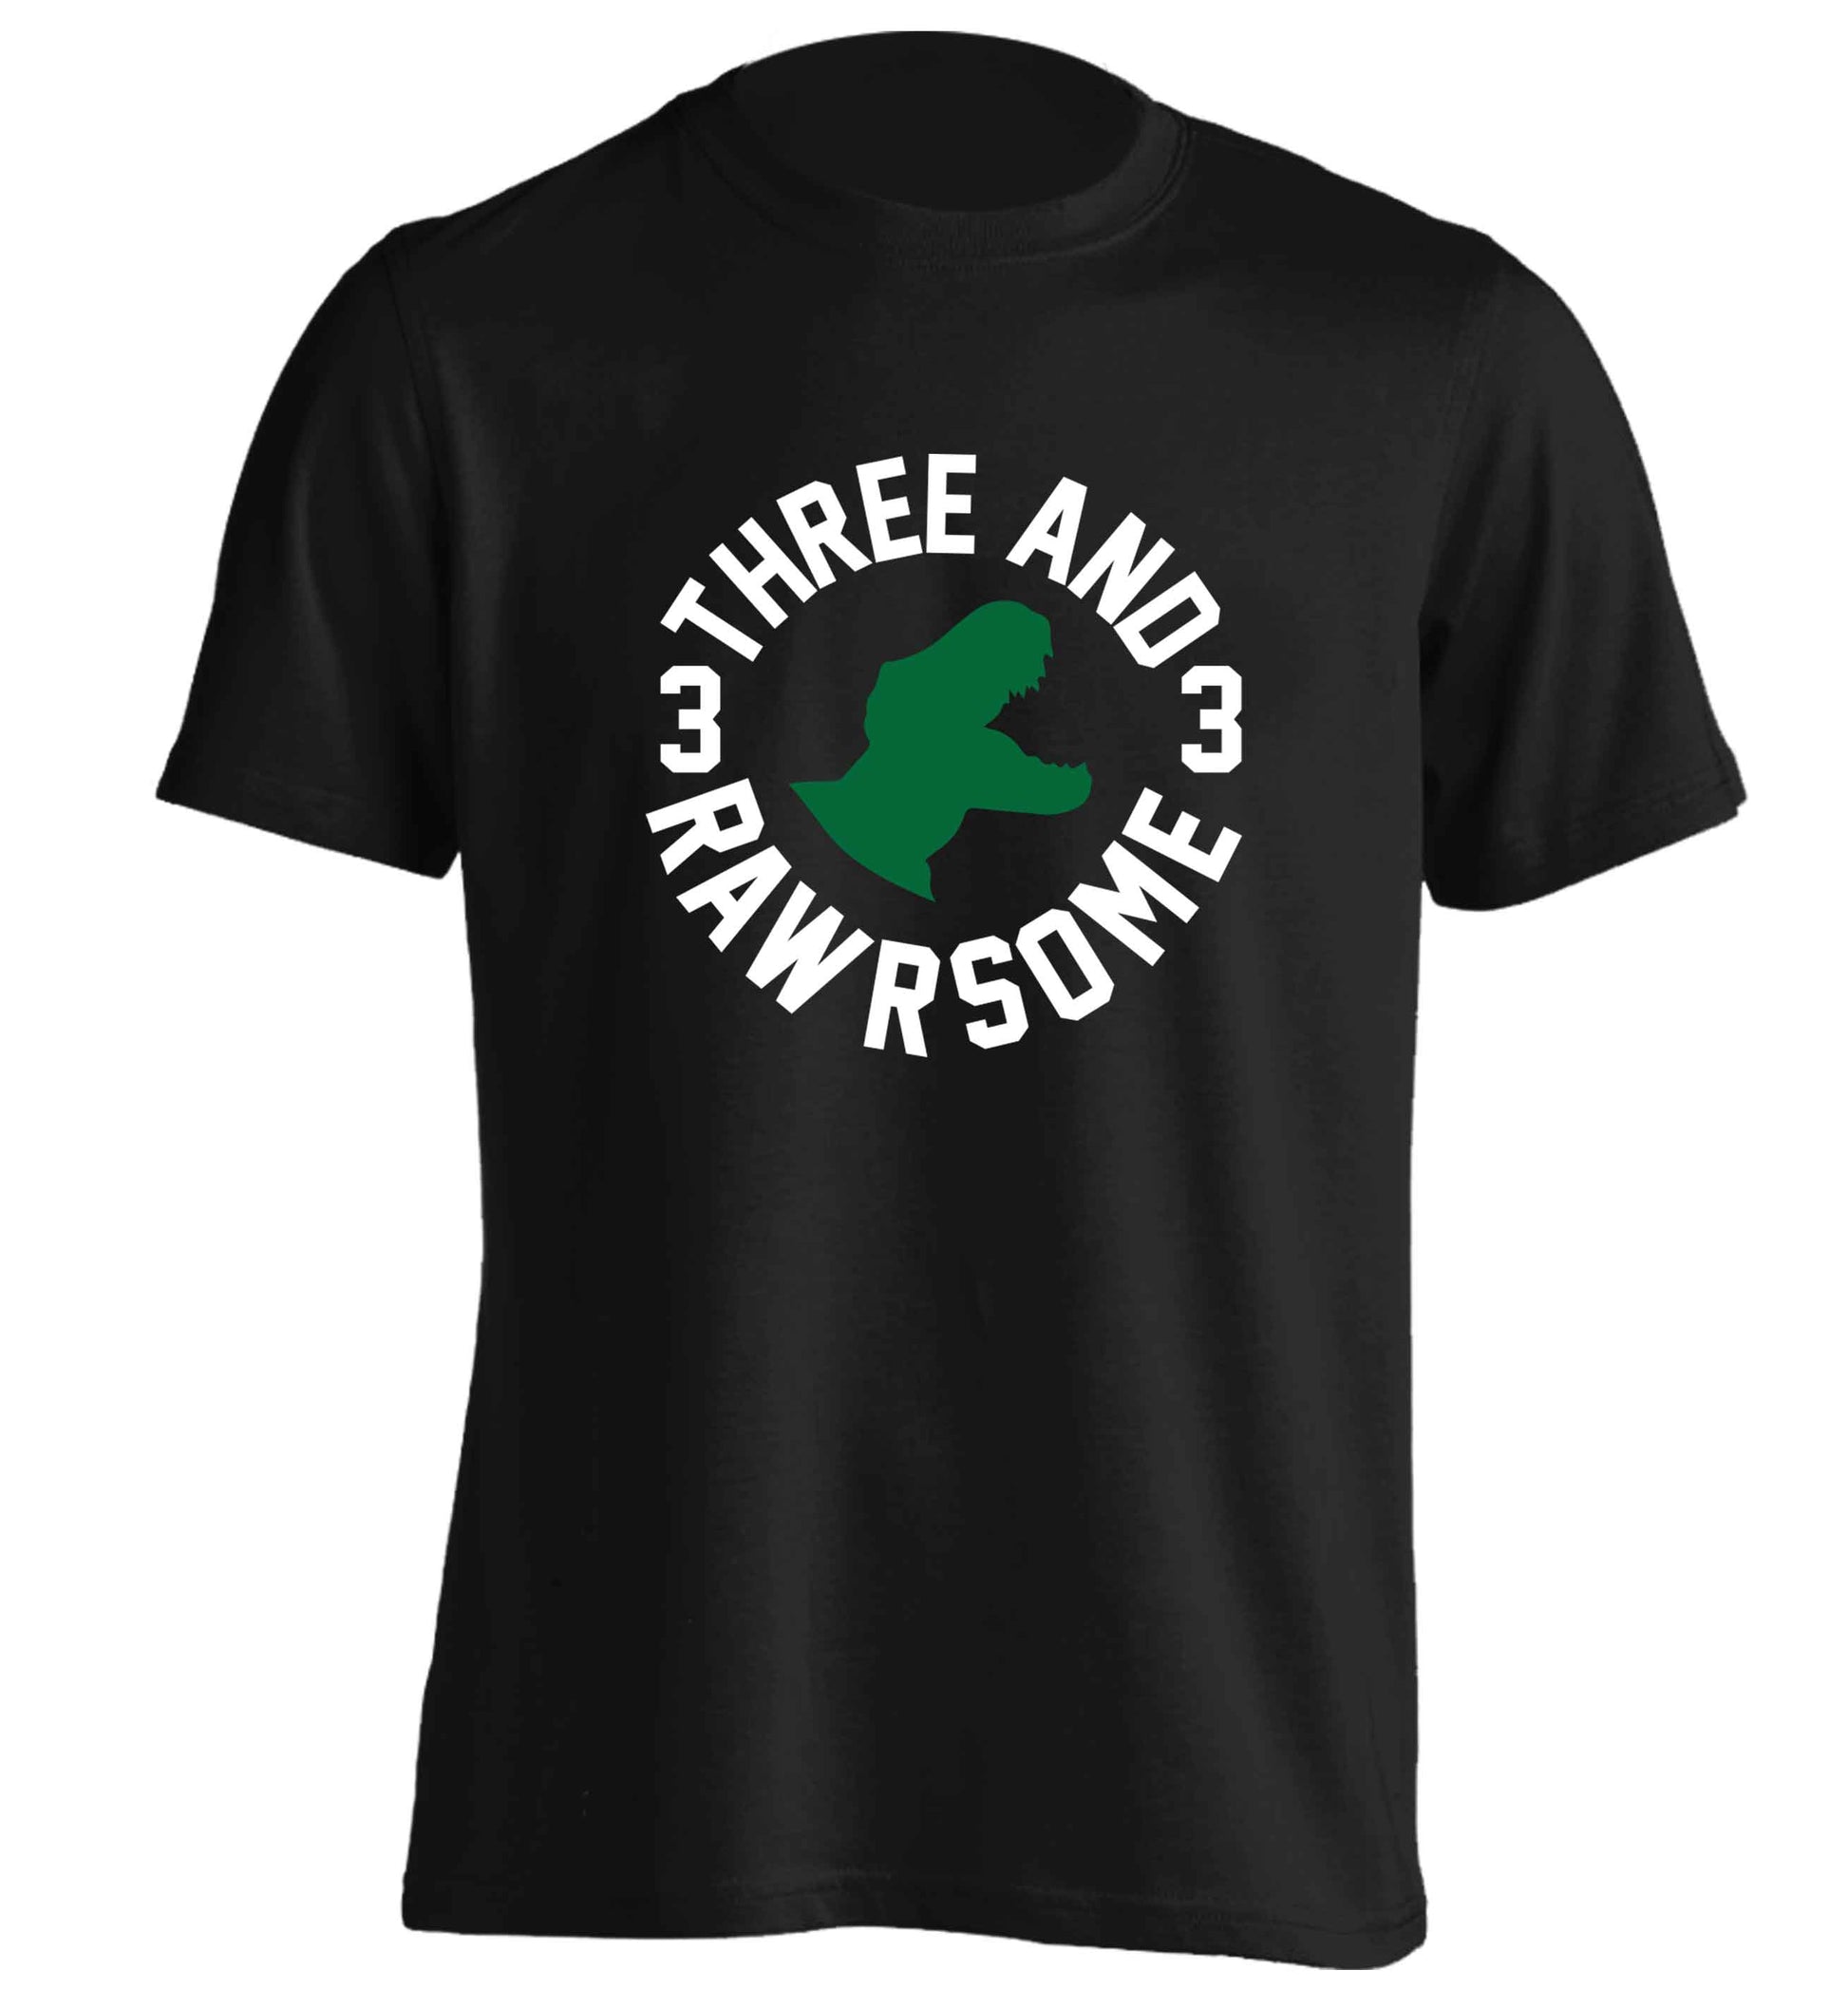 Three and rawrsome adults unisex black Tshirt 2XL